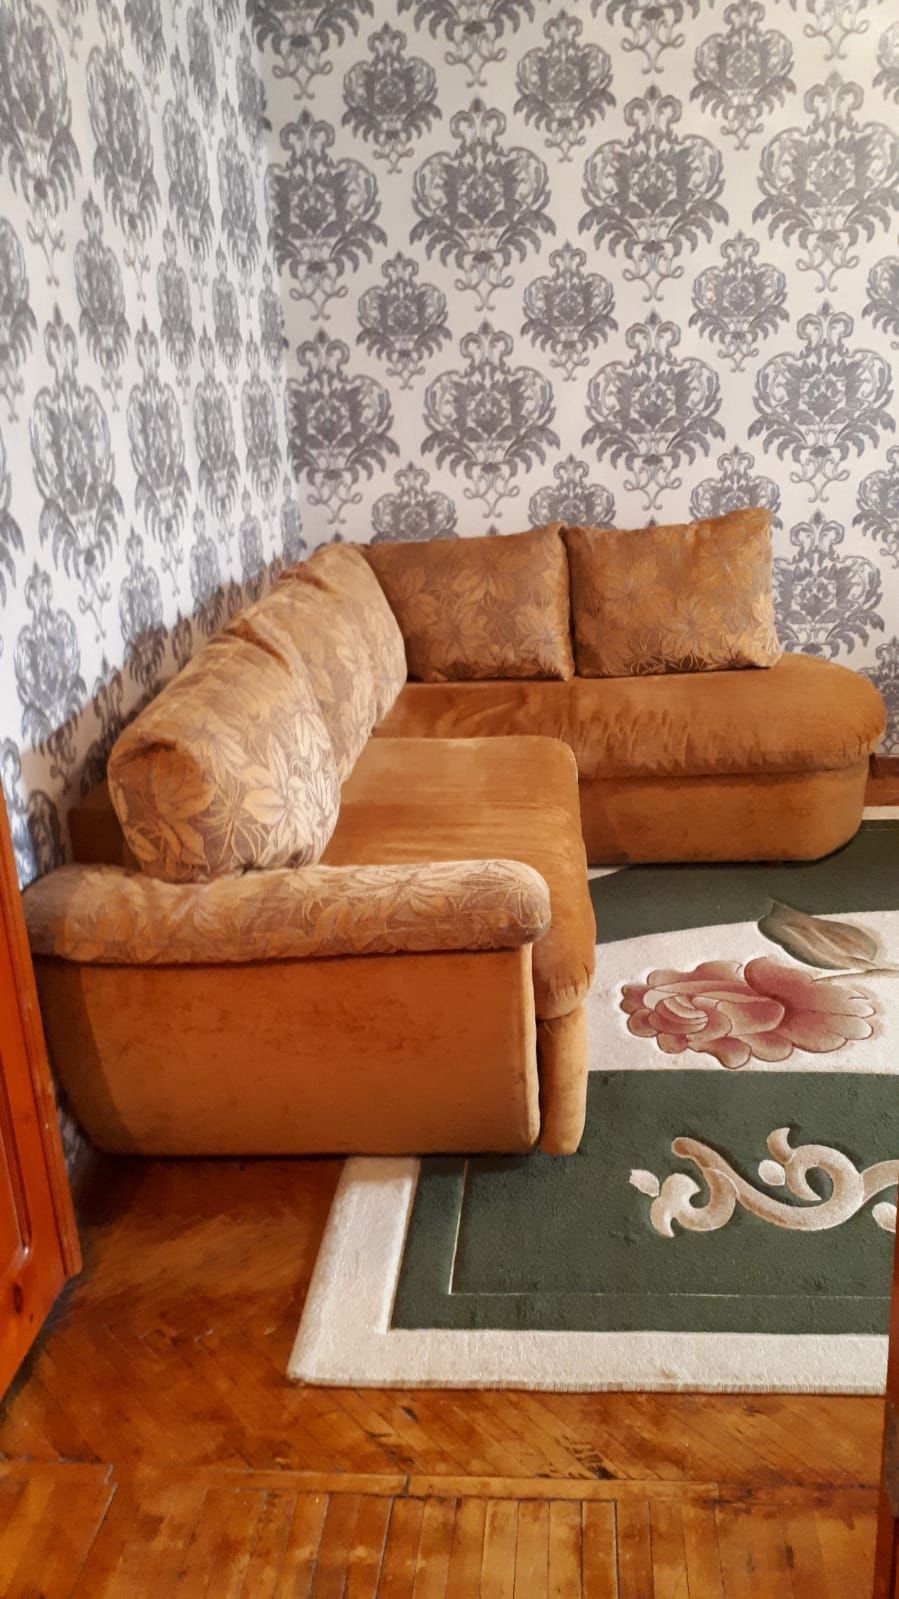 Продается угловой диван